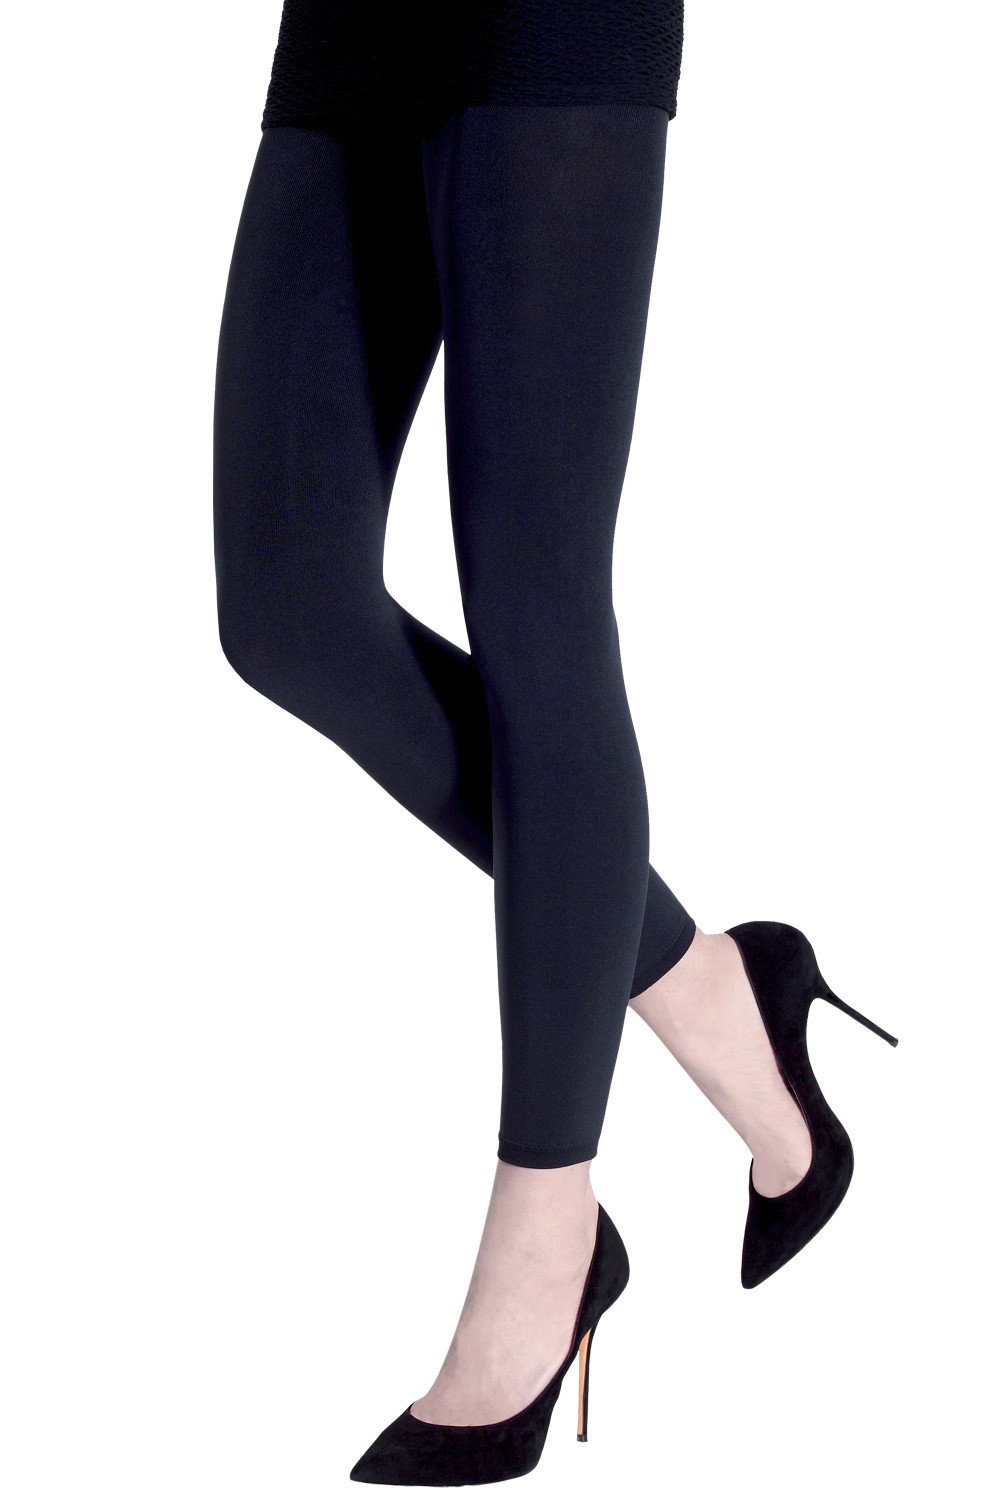 Buy NEXT2SKIN Women's Nylon Sheer Transparent Pattern Pantyhose Stocking  (Black)-N2S203-20 for Women Online in India